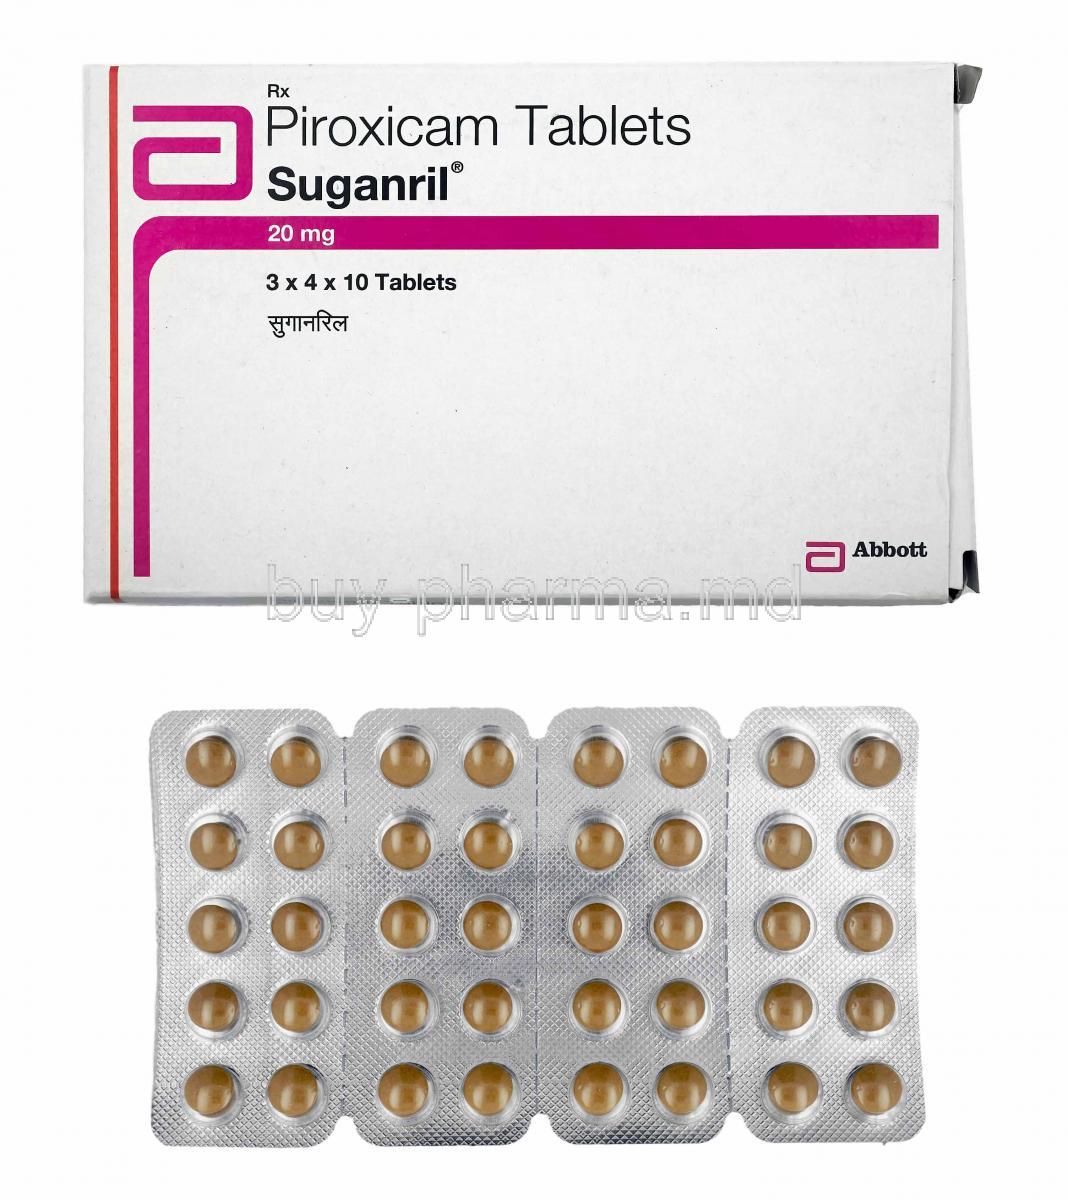 Suganril, Piroxicam 20mg box and tablets